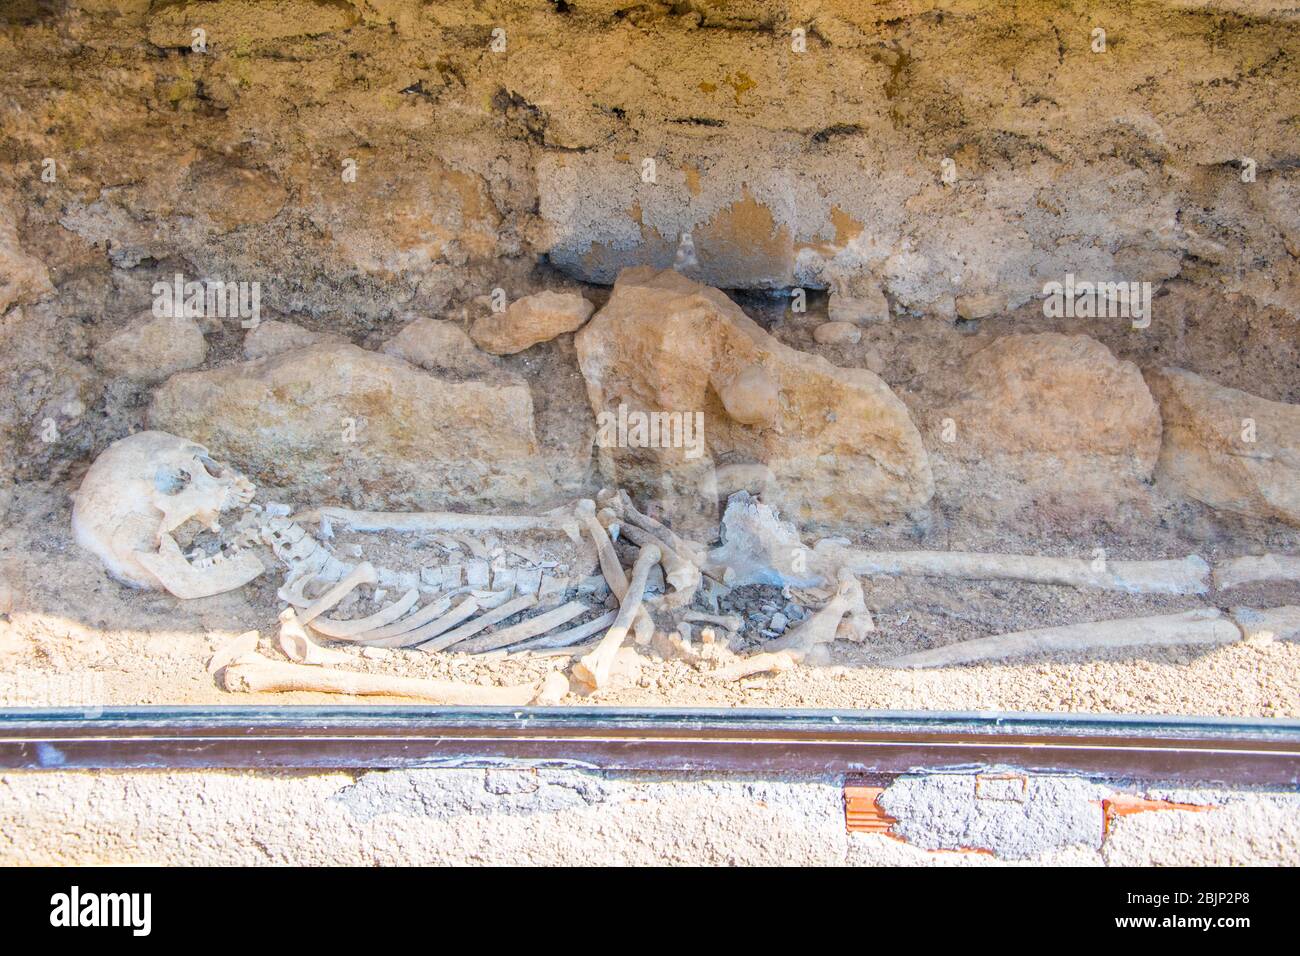 Sito archeologico di Nemea in Grecia. Uno scheletro di una donna di età superiore ai 2000 anni è stato trovato in uno scavo nella zona Foto Stock